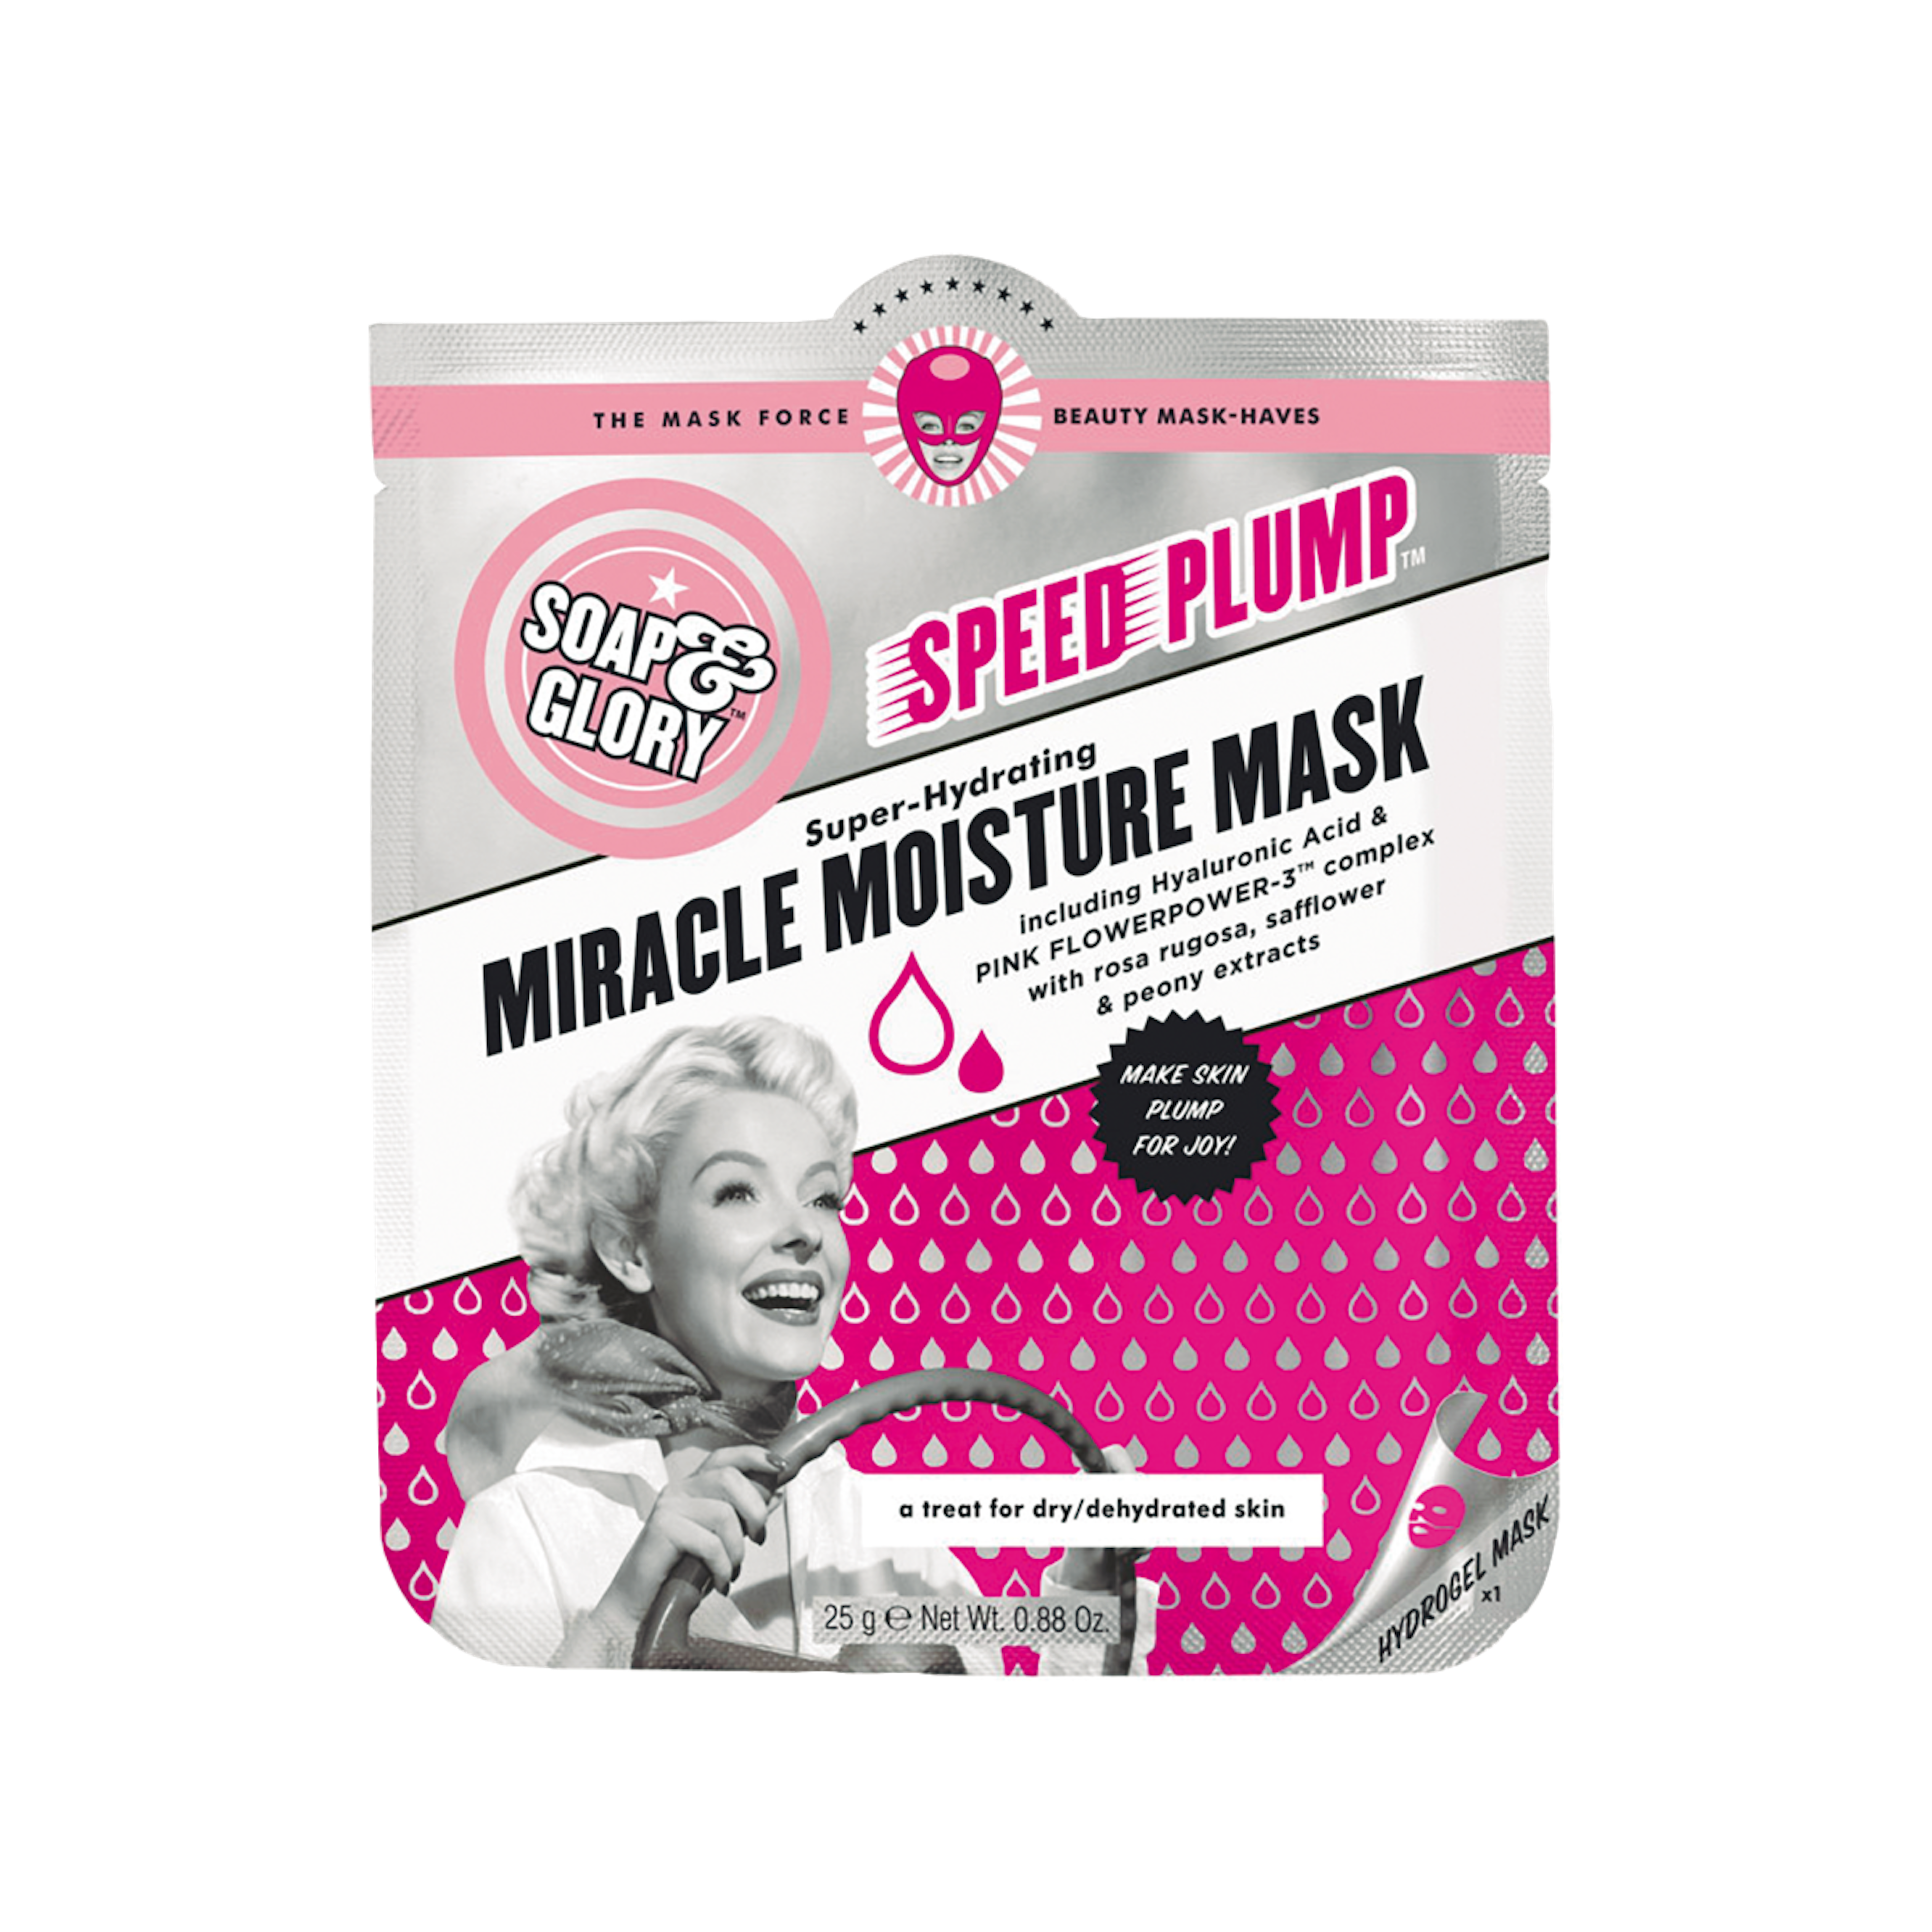 Speed Plump Miracle Moisture Mask